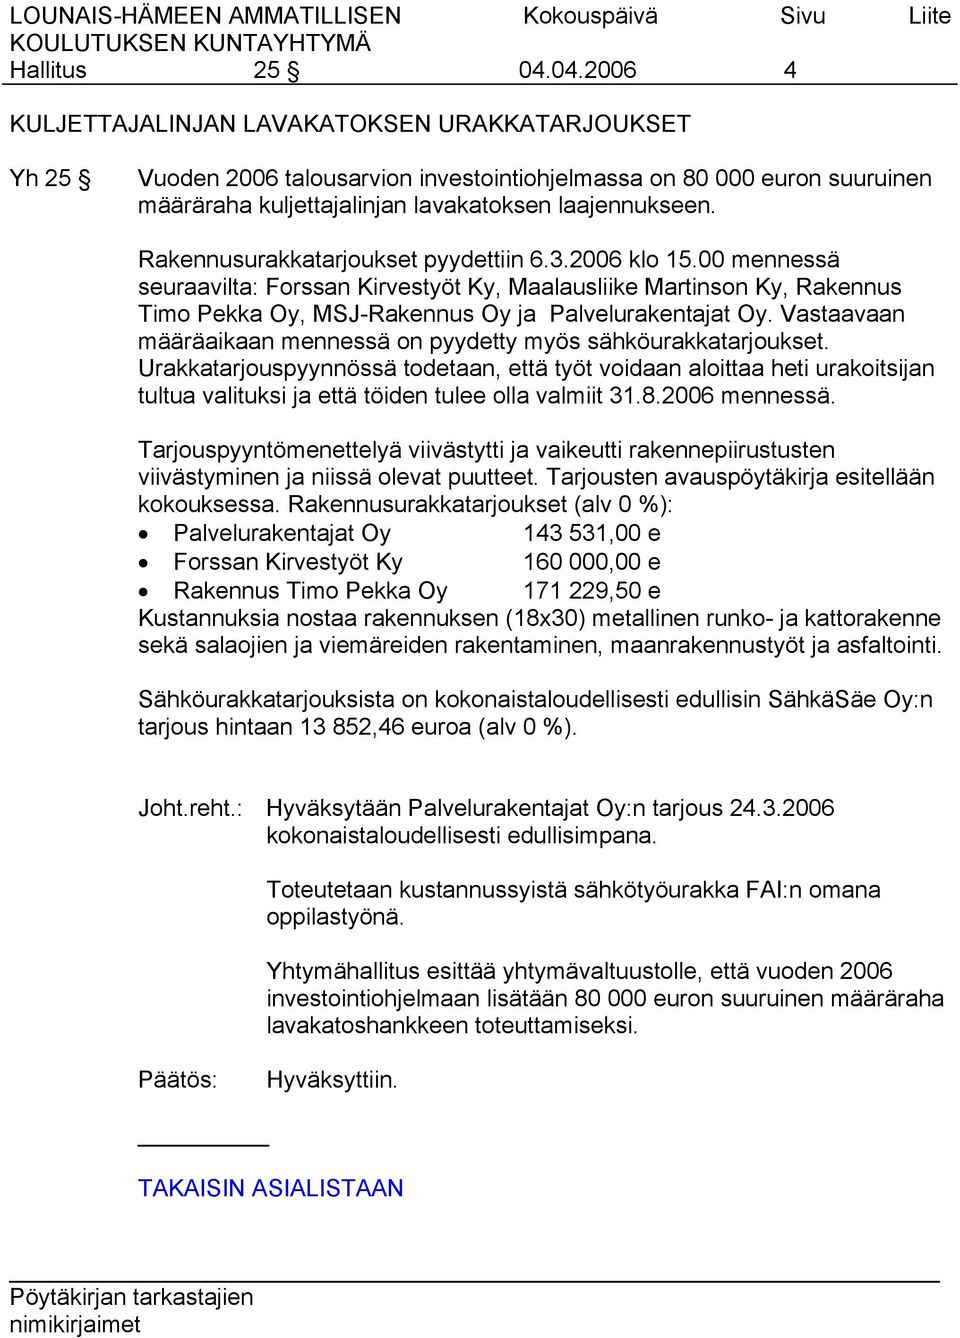 Rakennusurakkatarjoukset pyydettiin 6.3.2006 klo 15.00 mennessä seuraavilta: Forssan Kirvestyöt Ky, Maalausliike Martinson Ky, Rakennus Timo Pekka Oy, MSJ-Rakennus Oy ja Palvelurakentajat Oy.